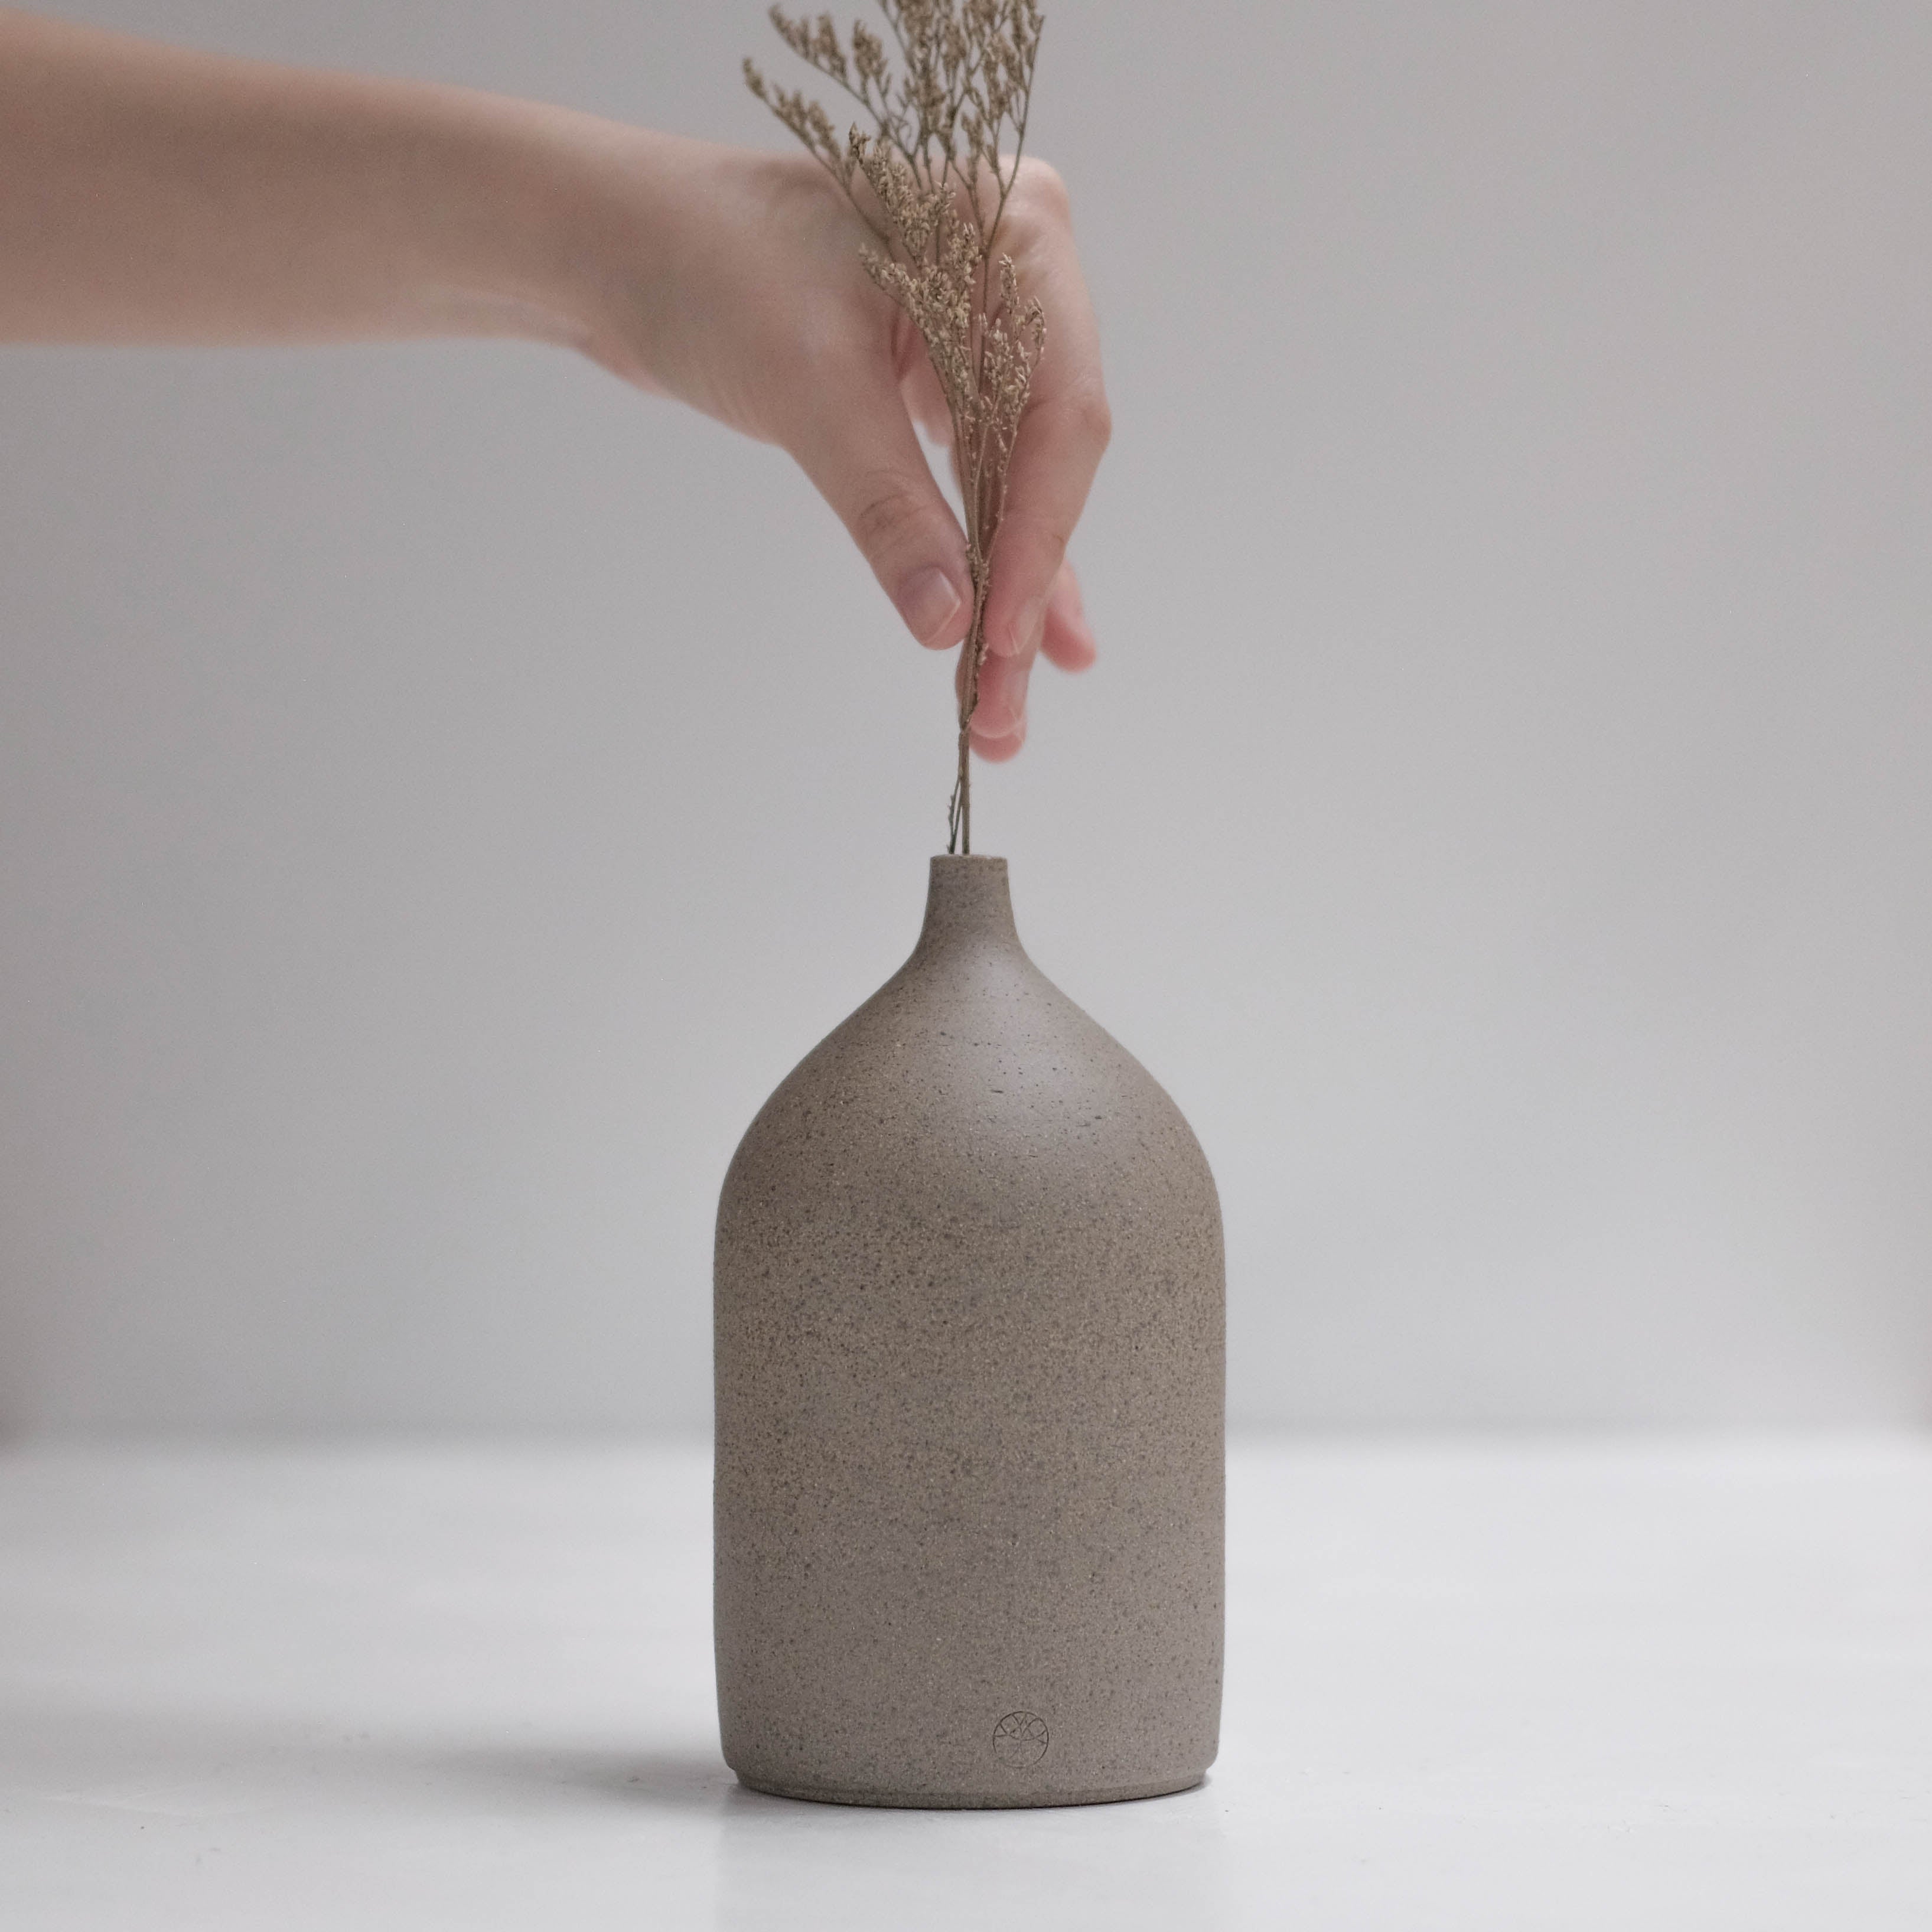 Ishi (石) Vase #ADN17